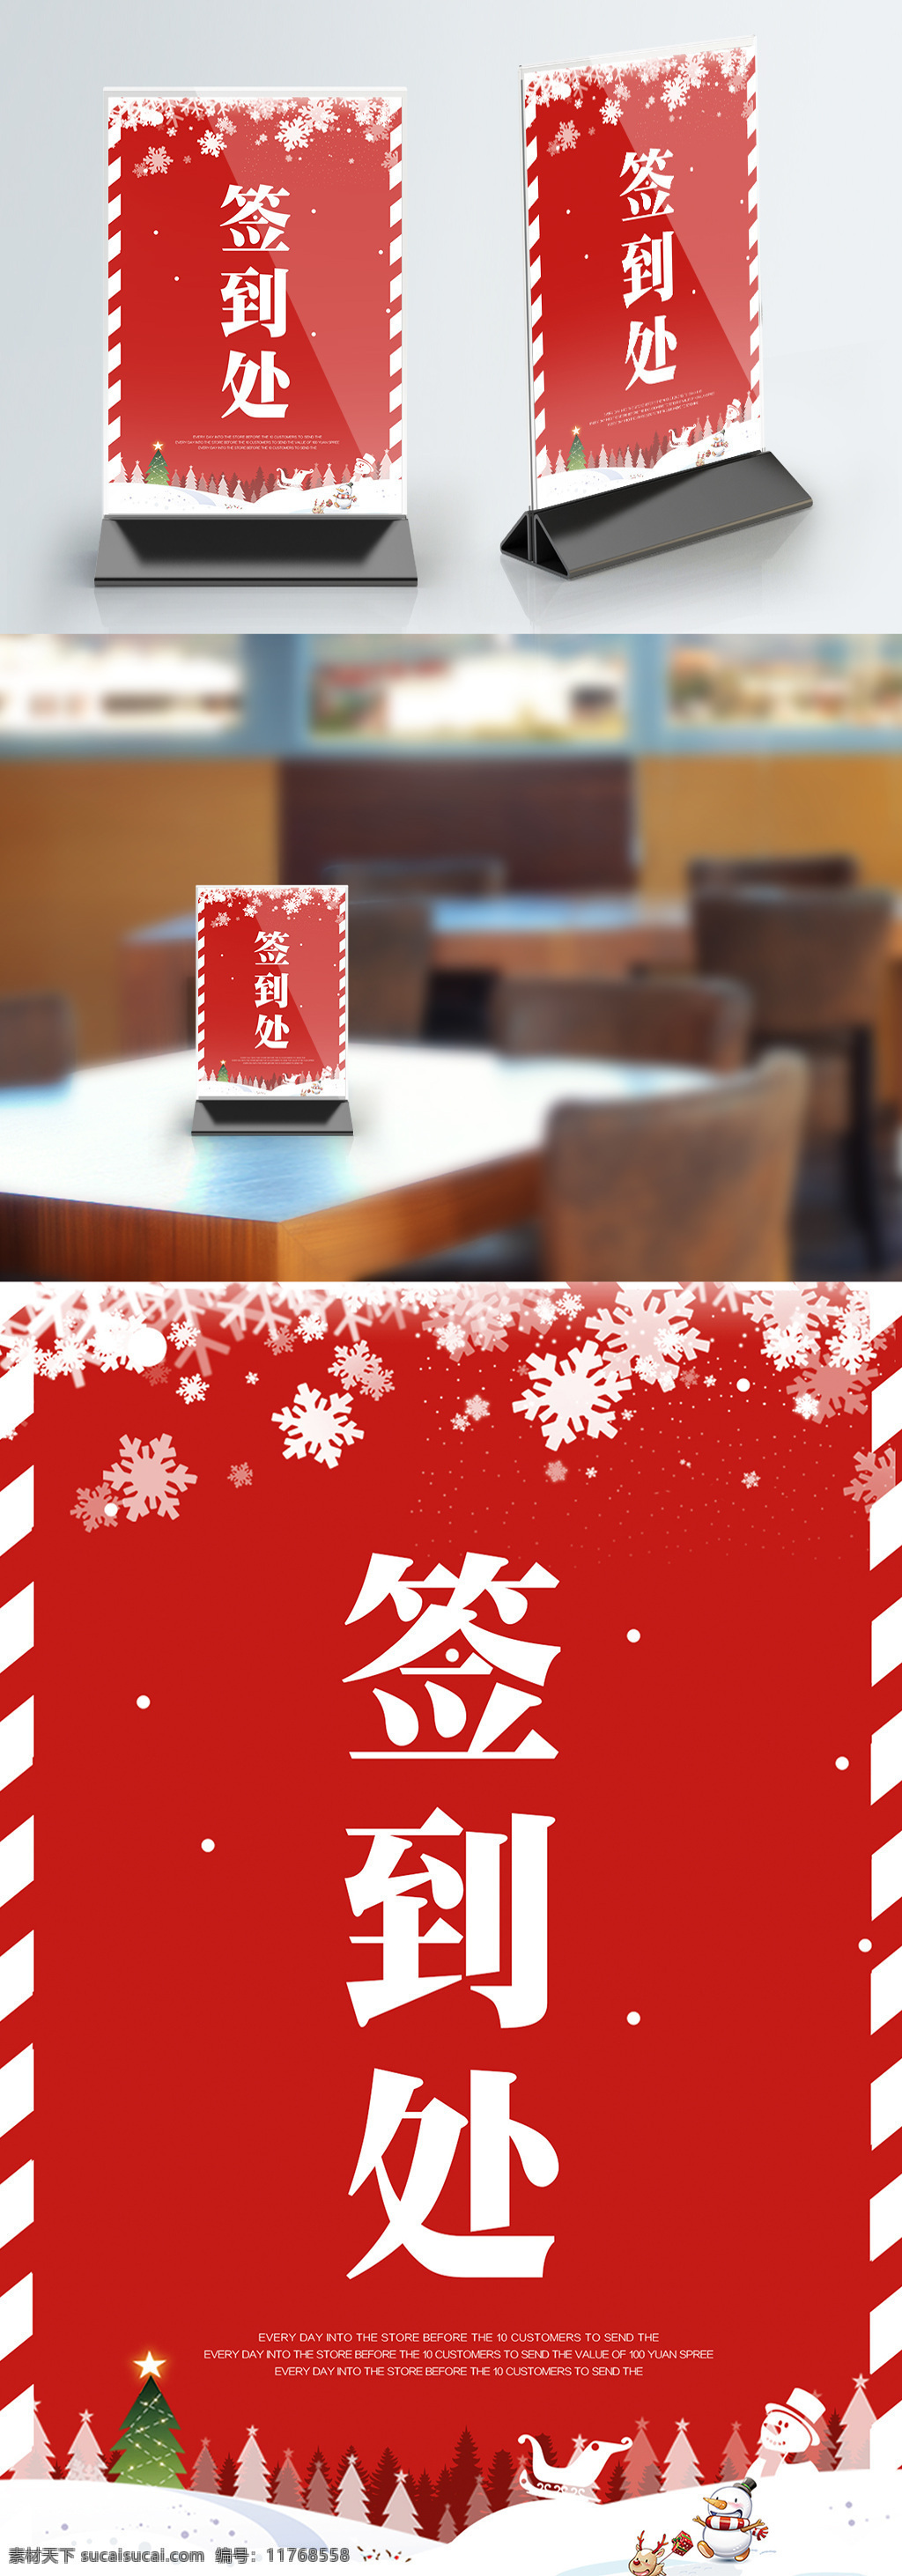 红色 简约 大气 圣诞节 桌 卡 模板 圣诞快乐 桌卡 桌卡设计 活动桌卡 简约桌卡 晚会桌卡设计